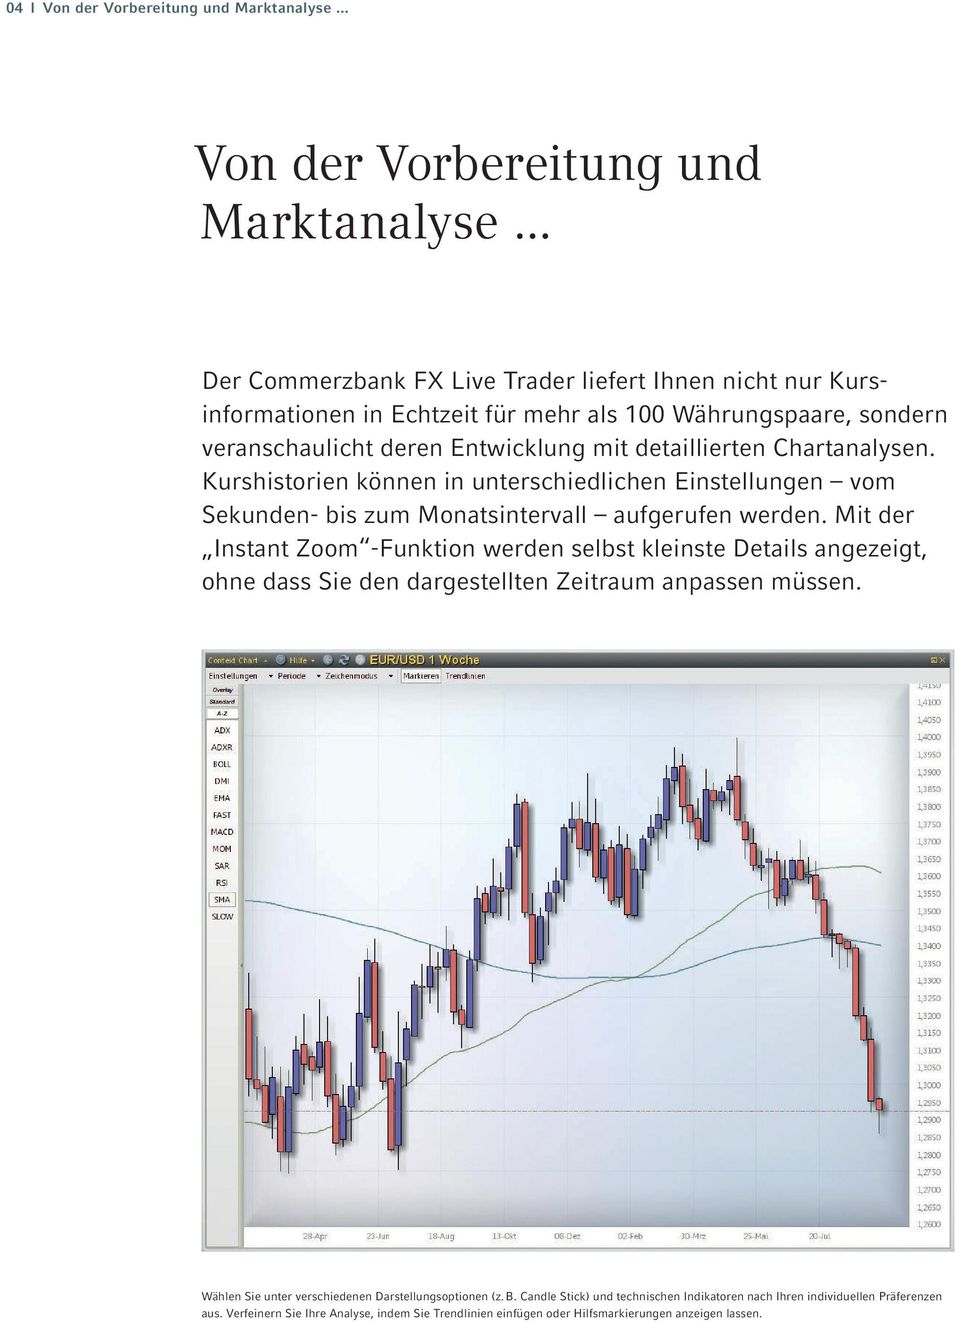 .. Der Commerzbank FX Live Trader liefert Ihnen nicht nur Kurs - informationen in Echtzeit für mehr als 100 Währungspaare, sondern veranschaulicht deren Entwicklung mit detaillierten